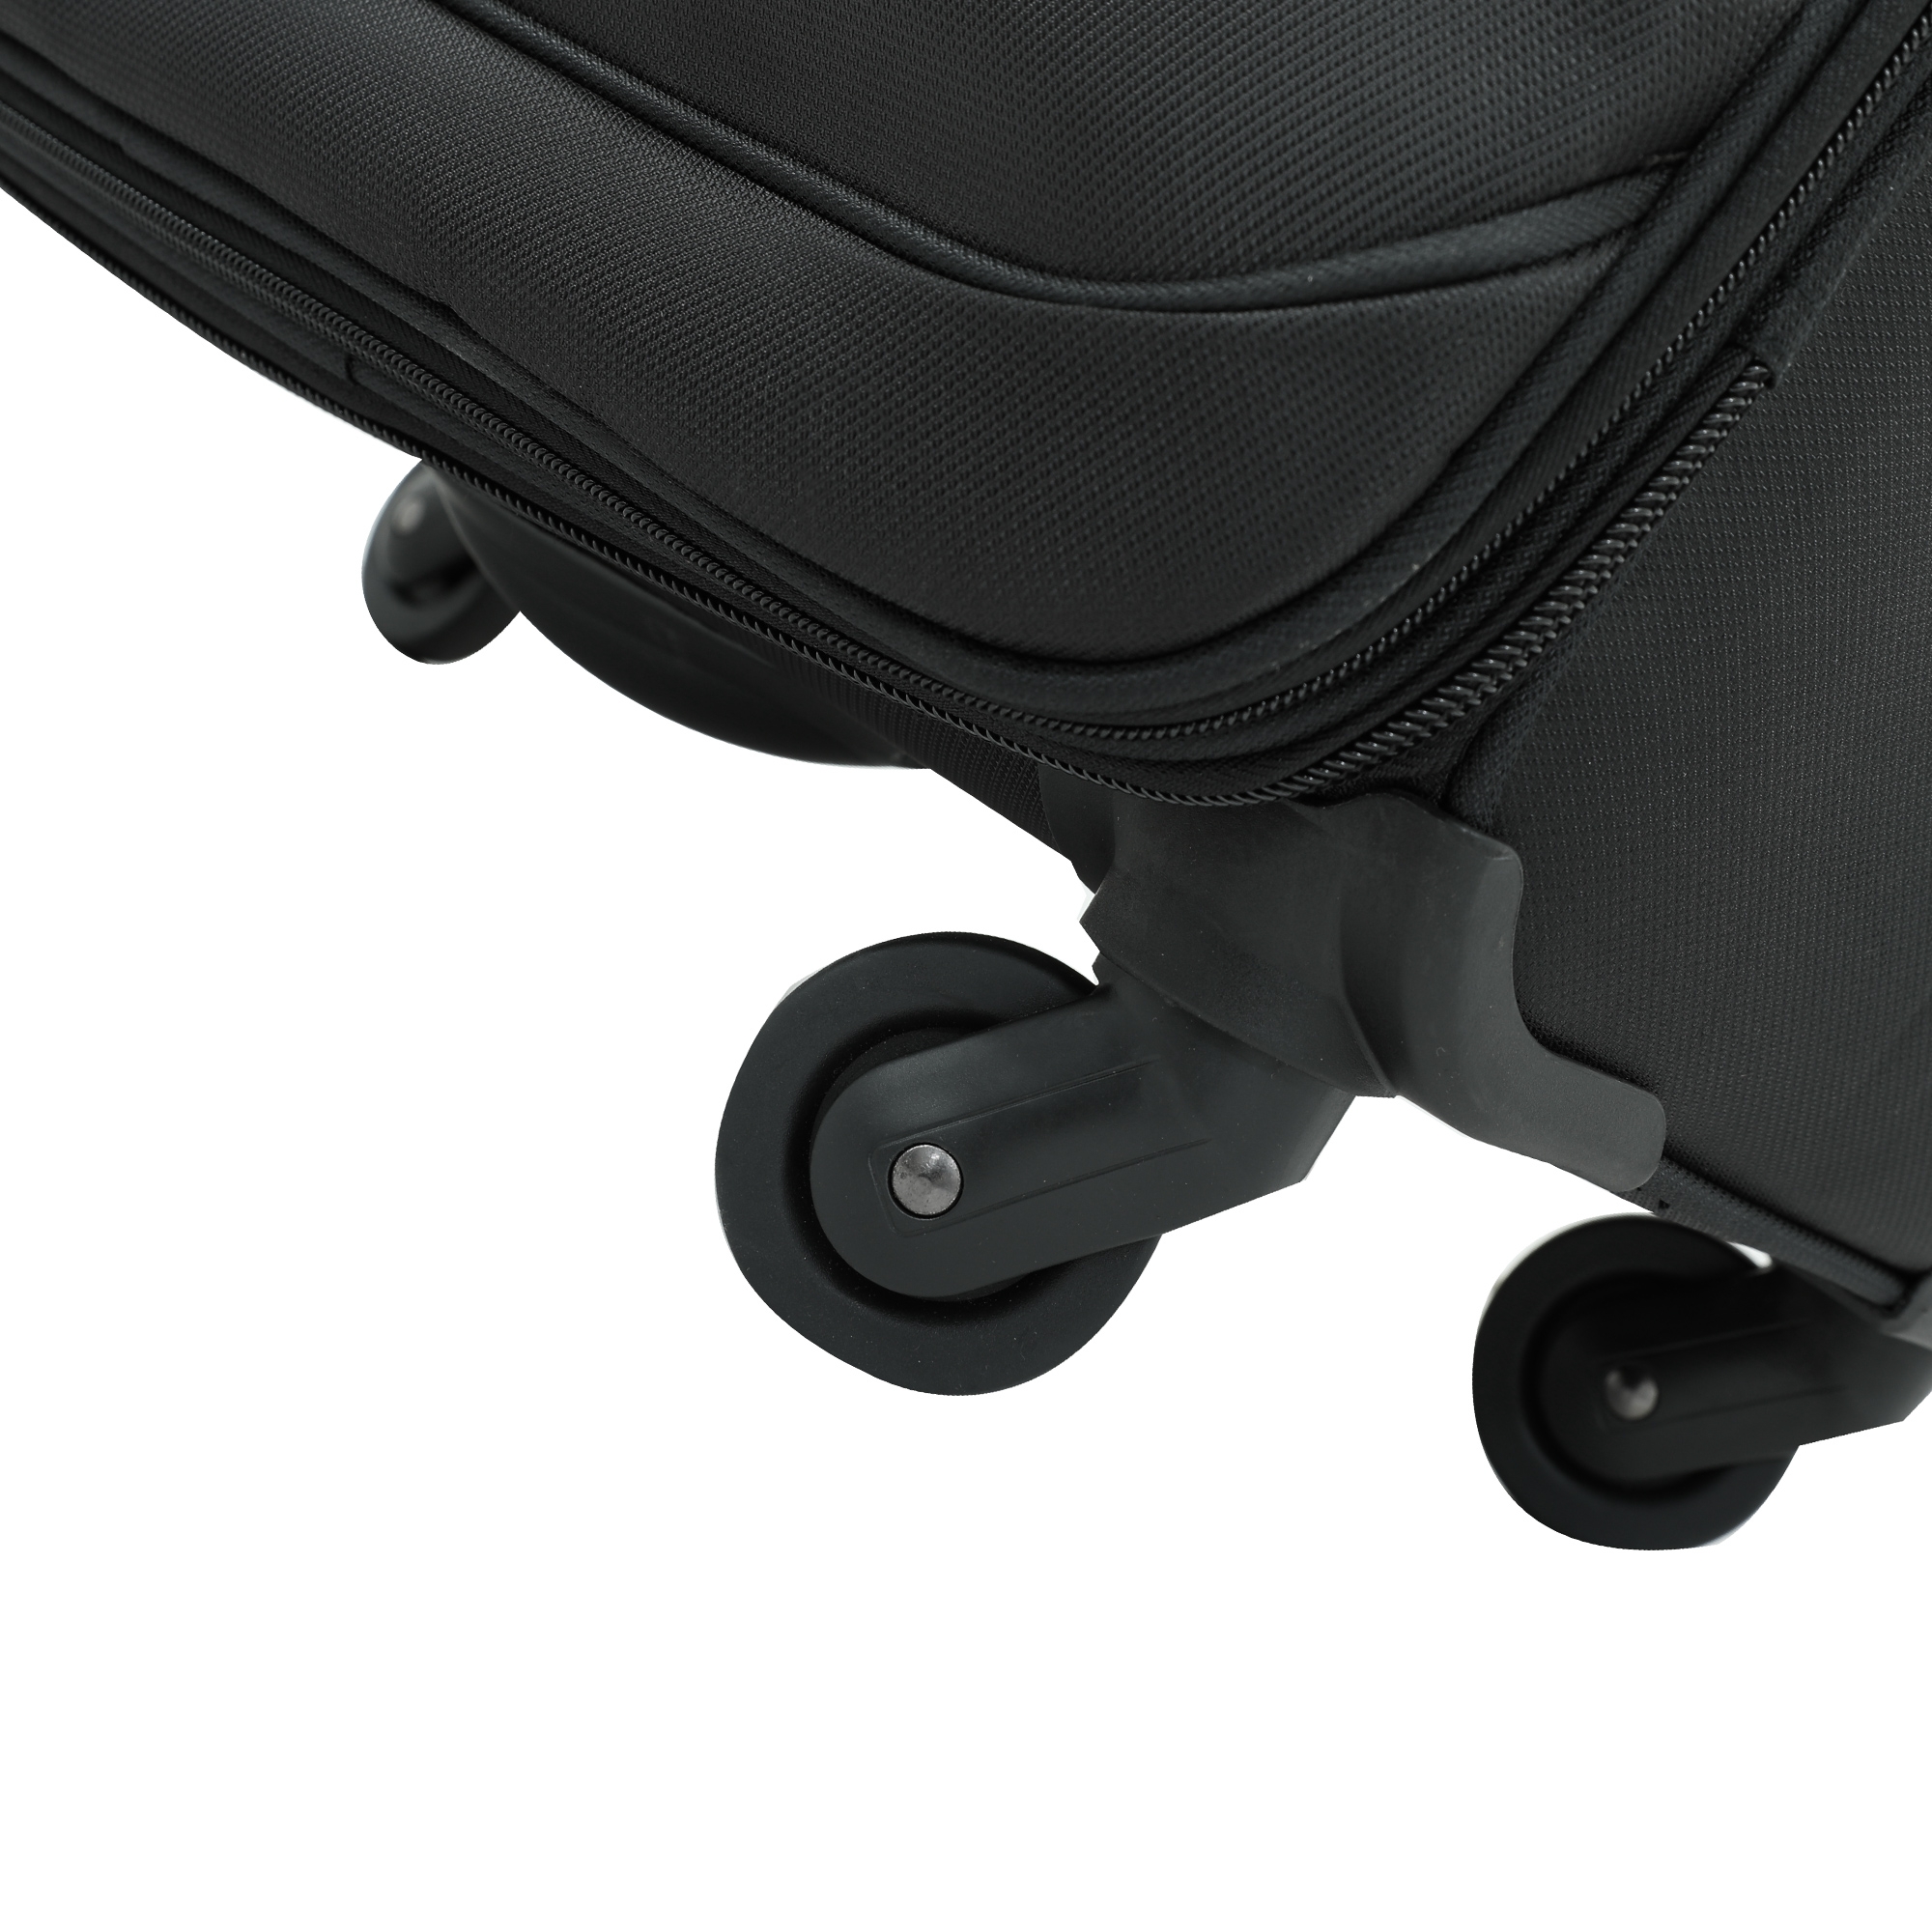 طقم حقائب سفر عدد 2 مادة النايلون بعجلات دوارة (28 ، 32) بوصة أسود PARA JOHN - Travel Luggage Suitcase Set of 2 - Luggage Spinner (28’’, 32’’)